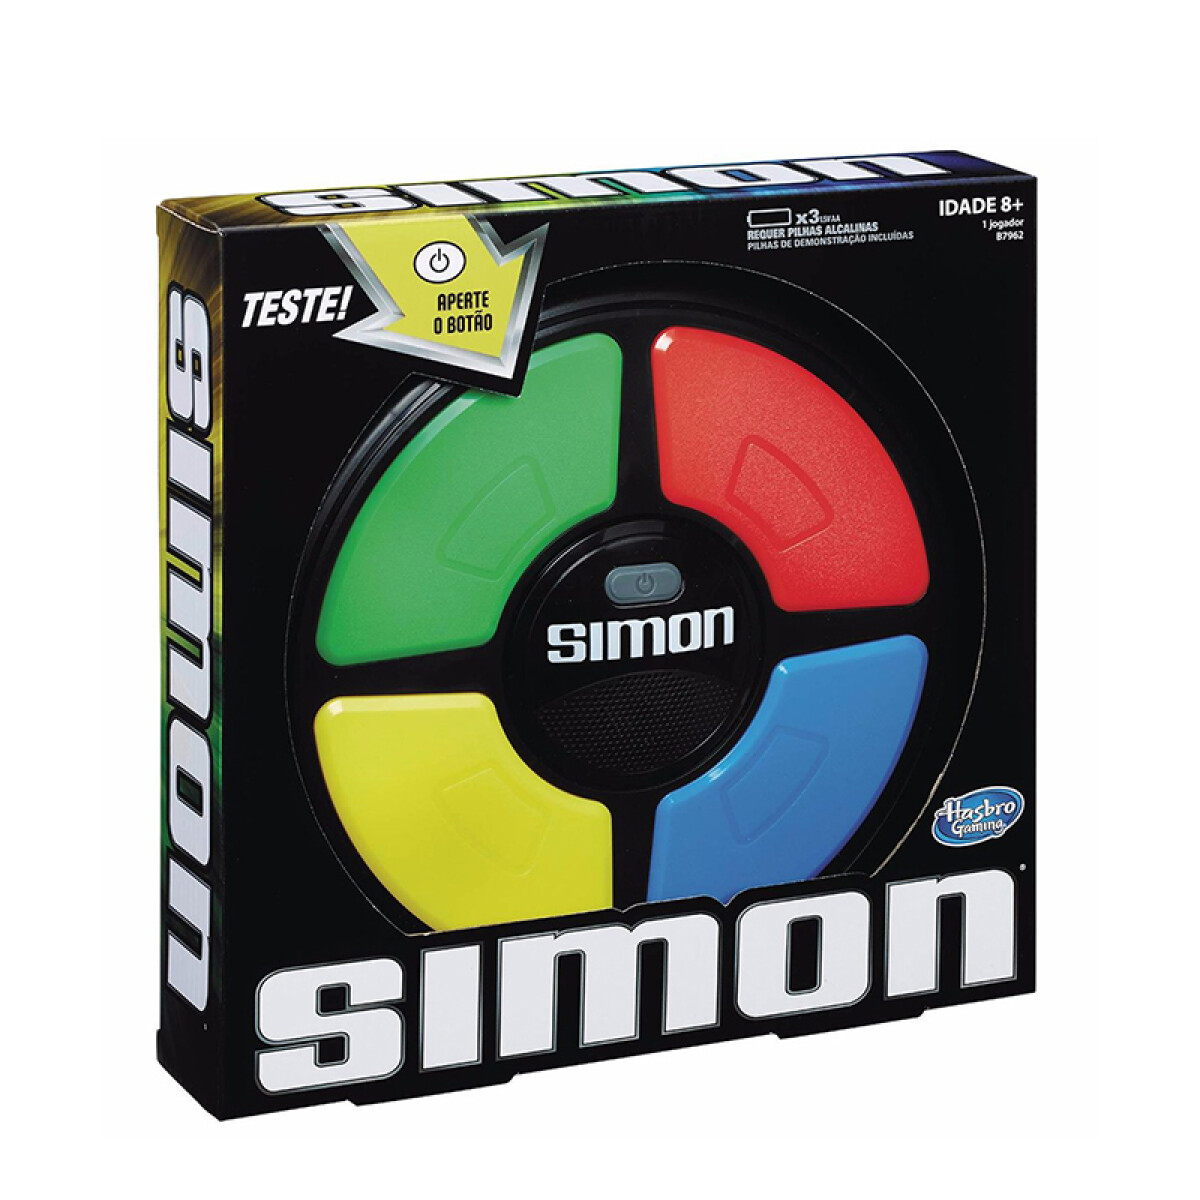 Simon 